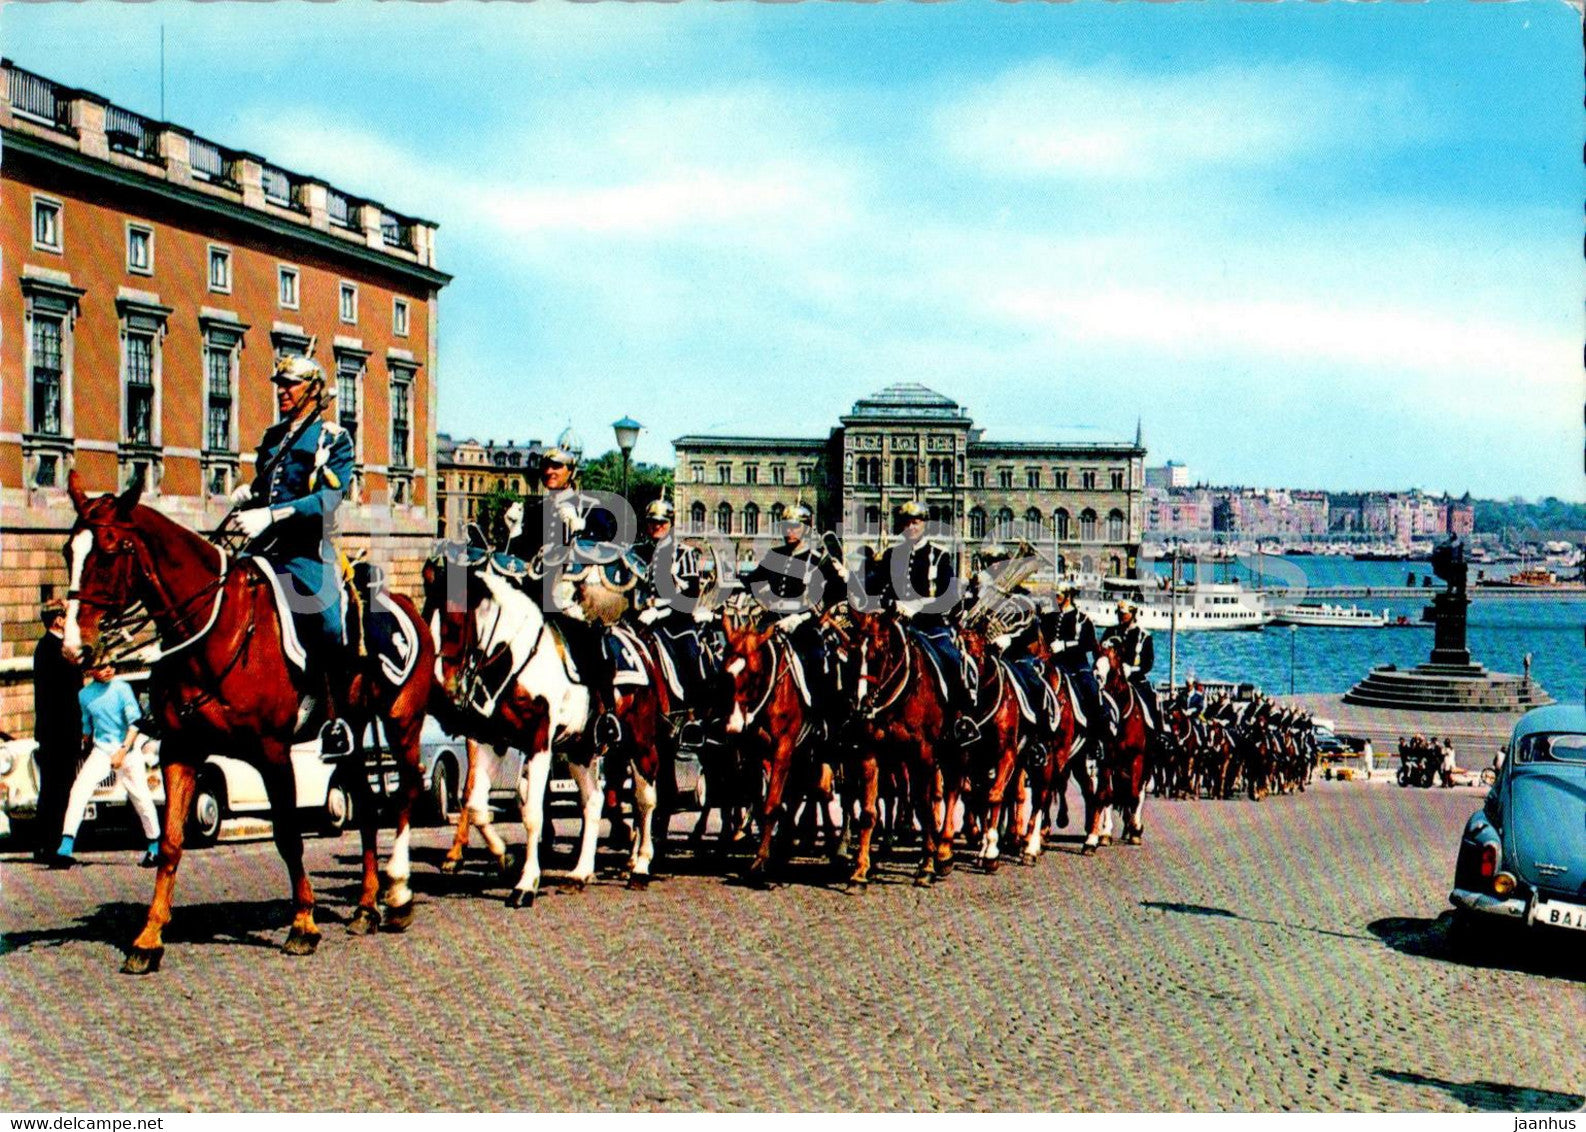 Stockholm - Vaktparaden vid Slottsbacken - The Royal Guard - horse - 557 - Sweden - unused - JH Postcards